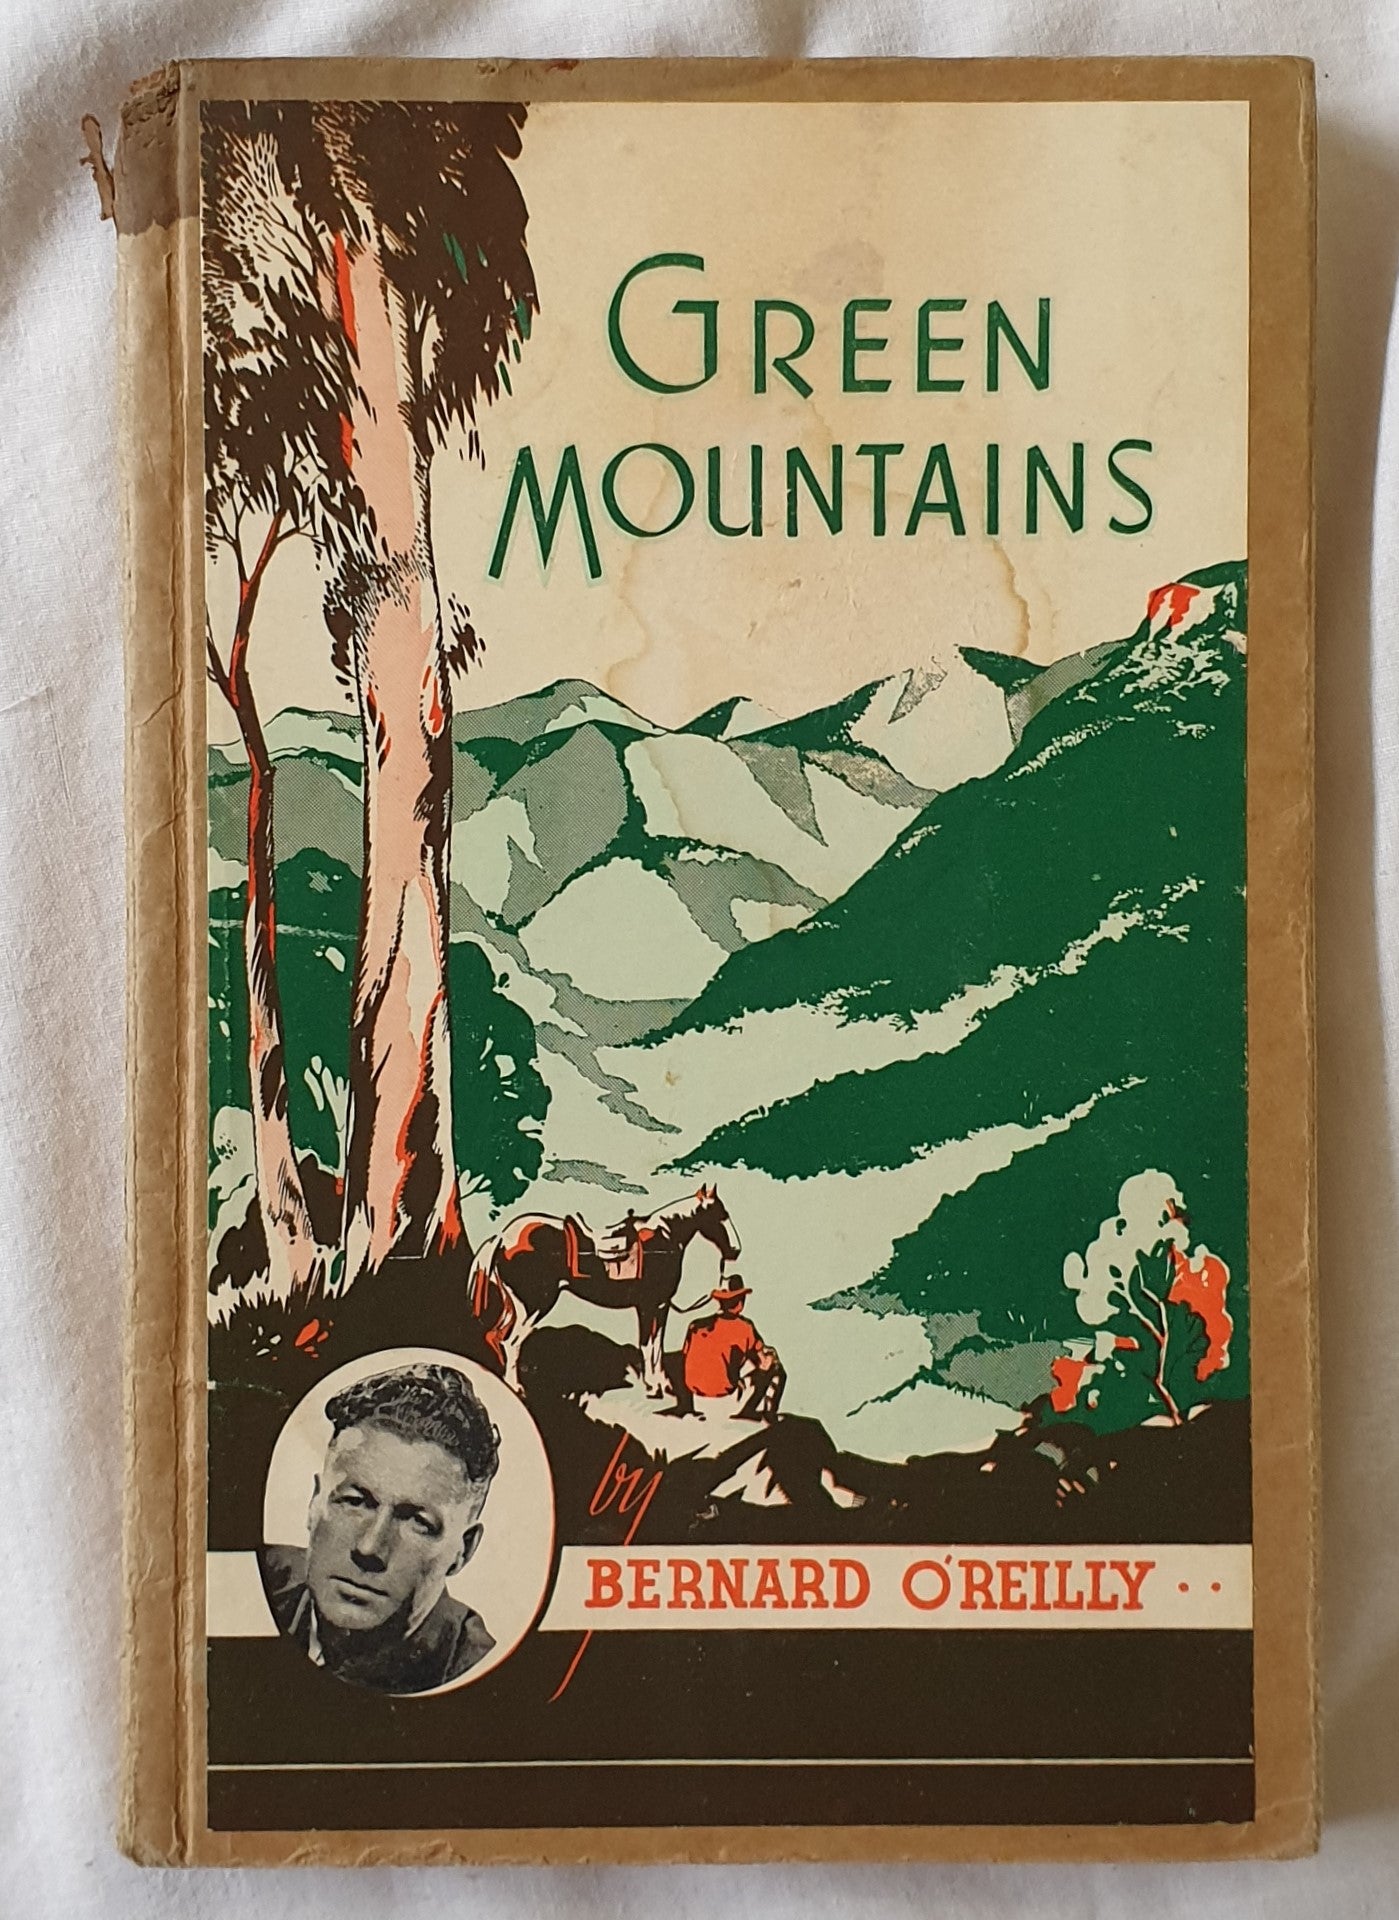 Green Mountains by Bernard O'Reilly